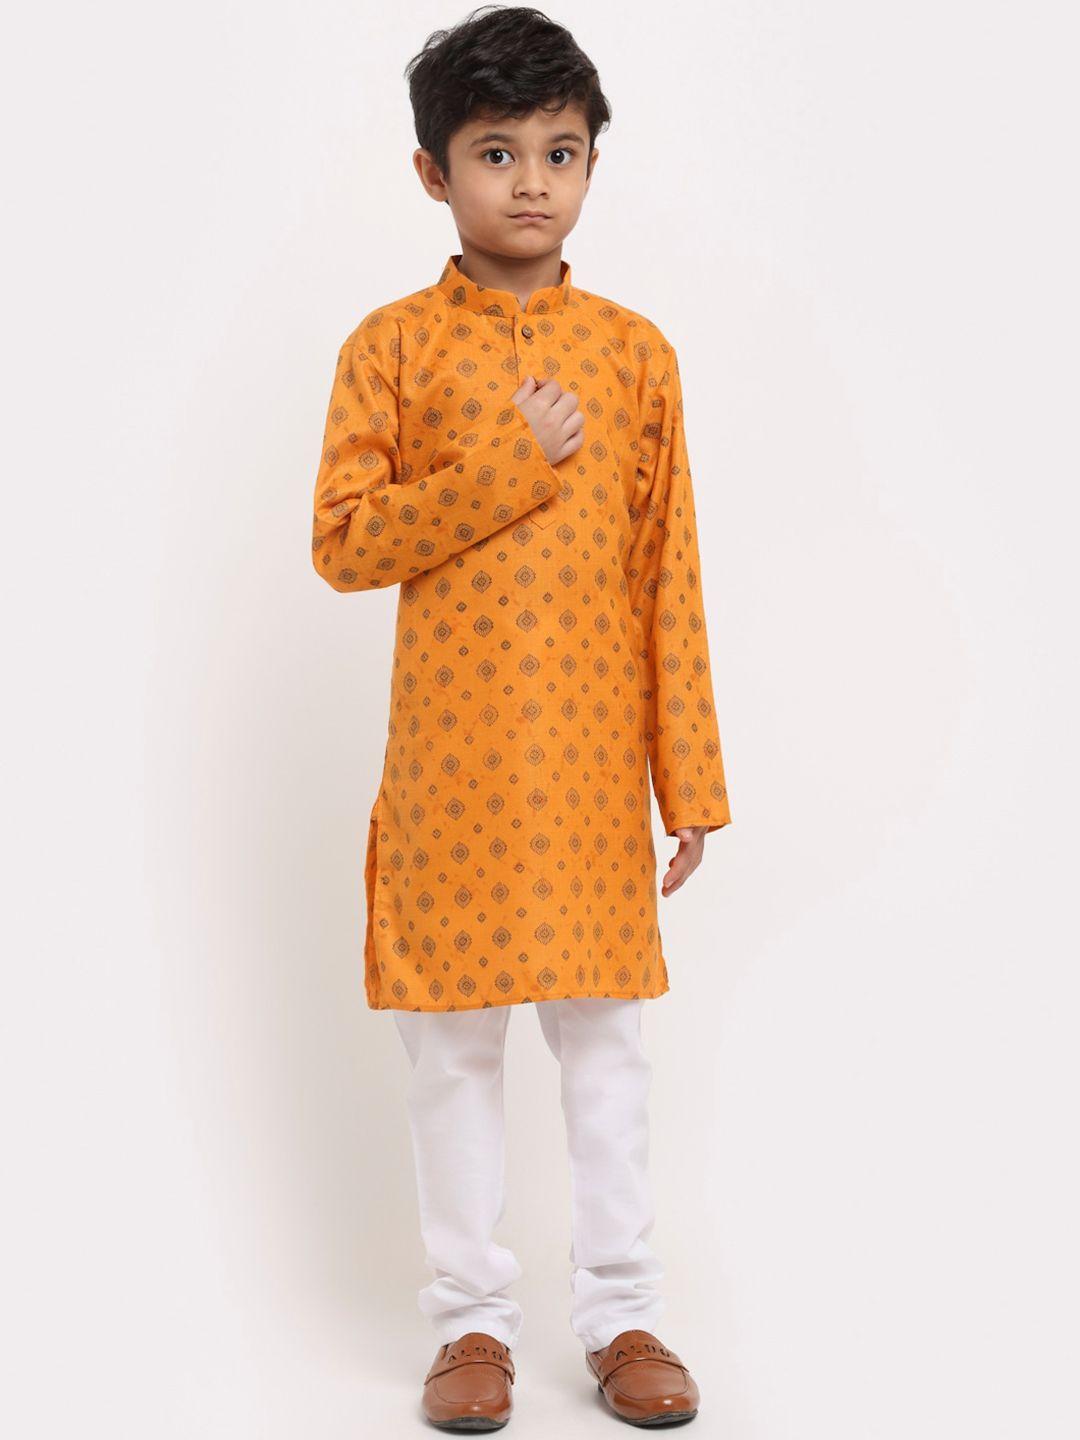 kraft india boys ethnic motifs printed pure cotton kurta with pyjamas